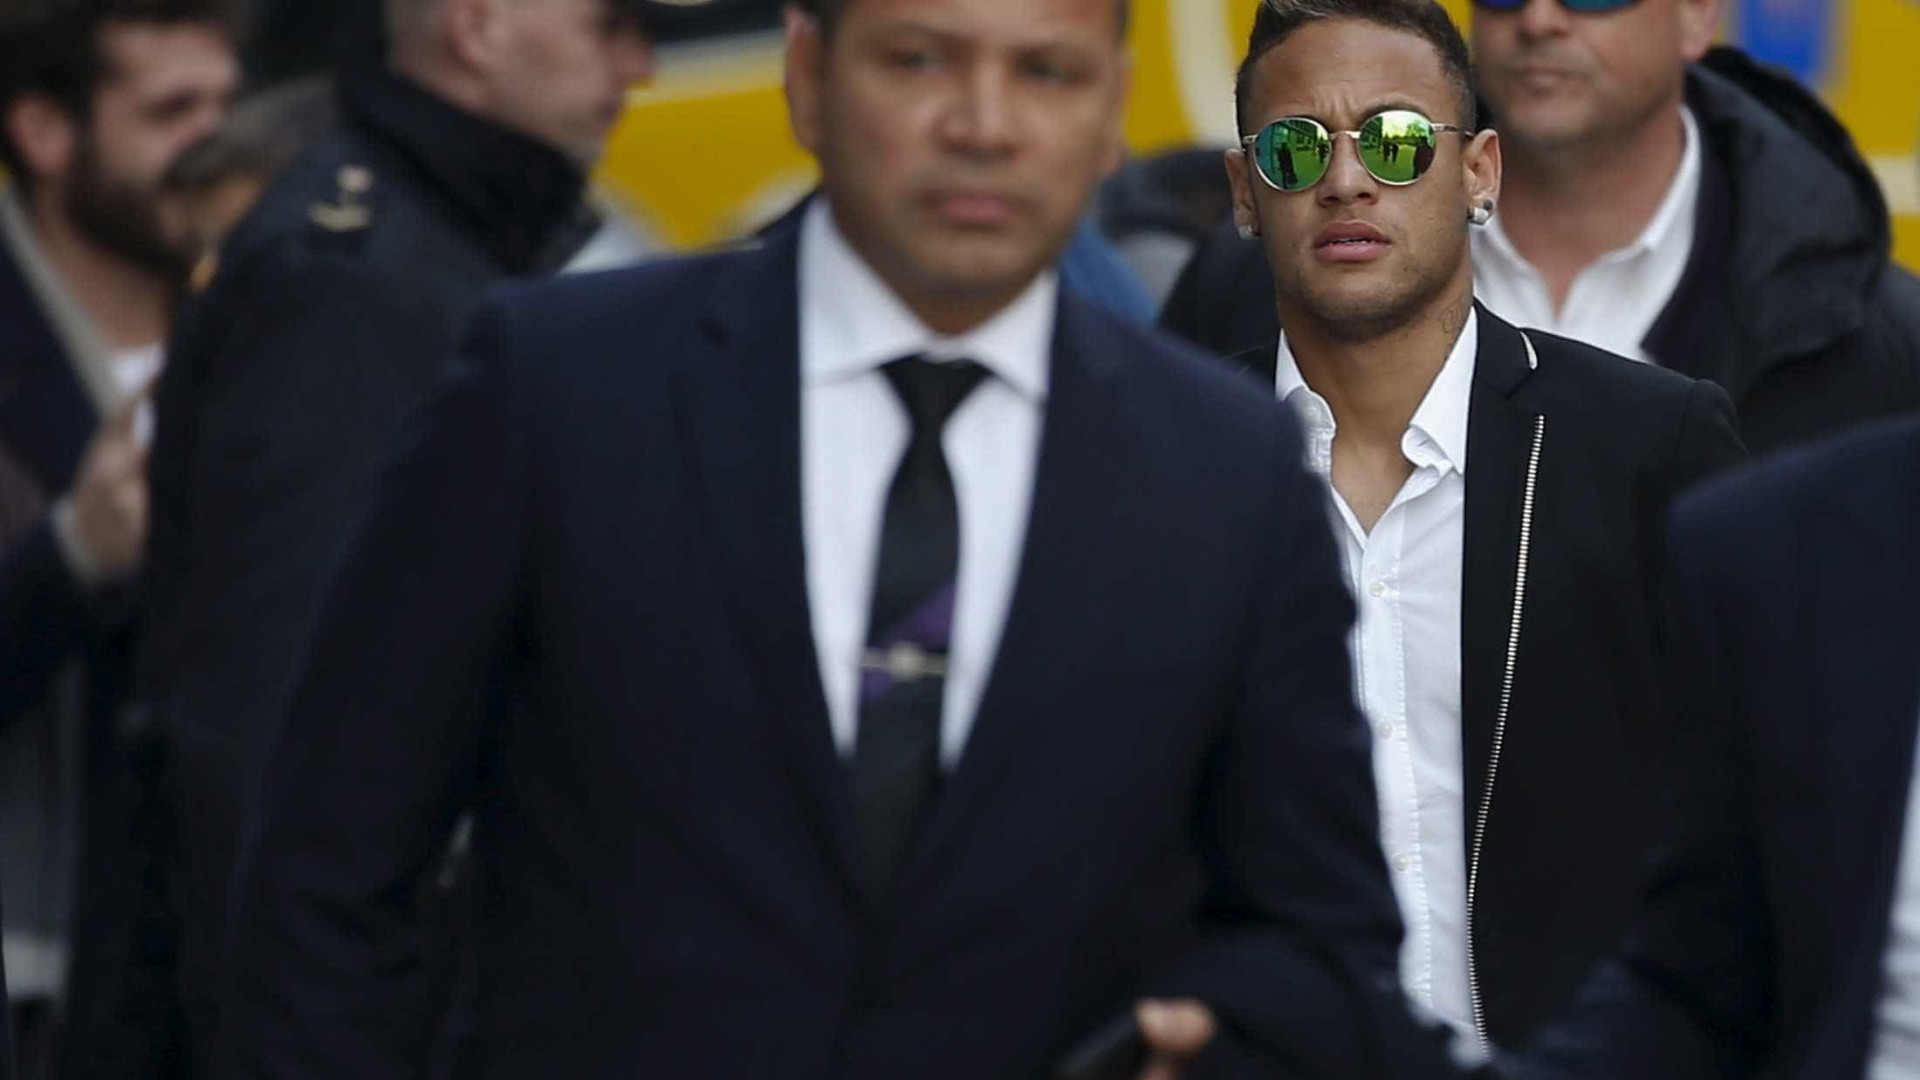 Justiça nega recursos e abre processo contra Neymar por corrupção